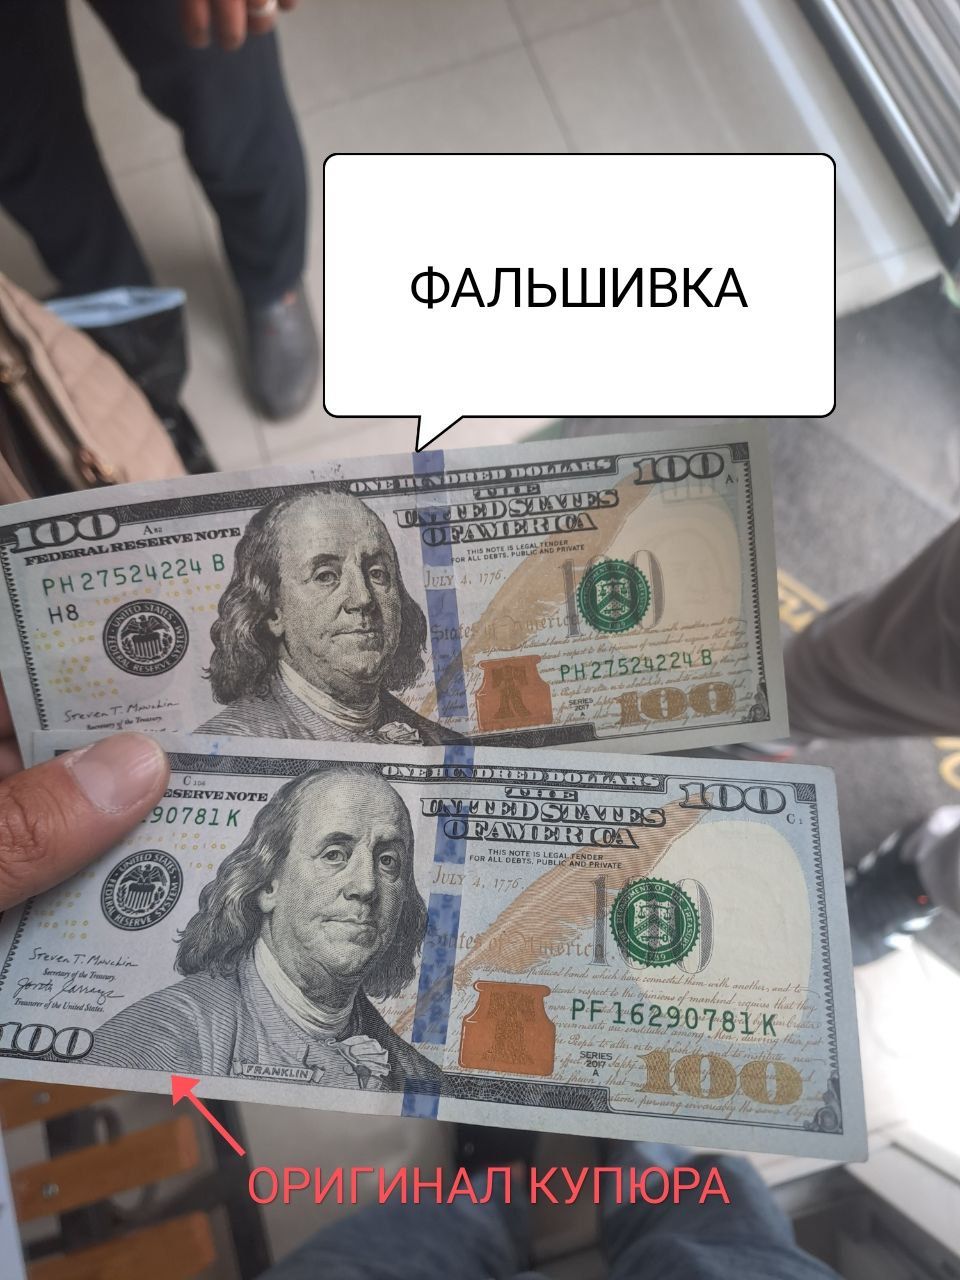 ПРОВЕРКА ВАЛЮТ с ГАРАНТИЕЙ!!!доллар, евро, рубль, сум.Выезд в нотариус